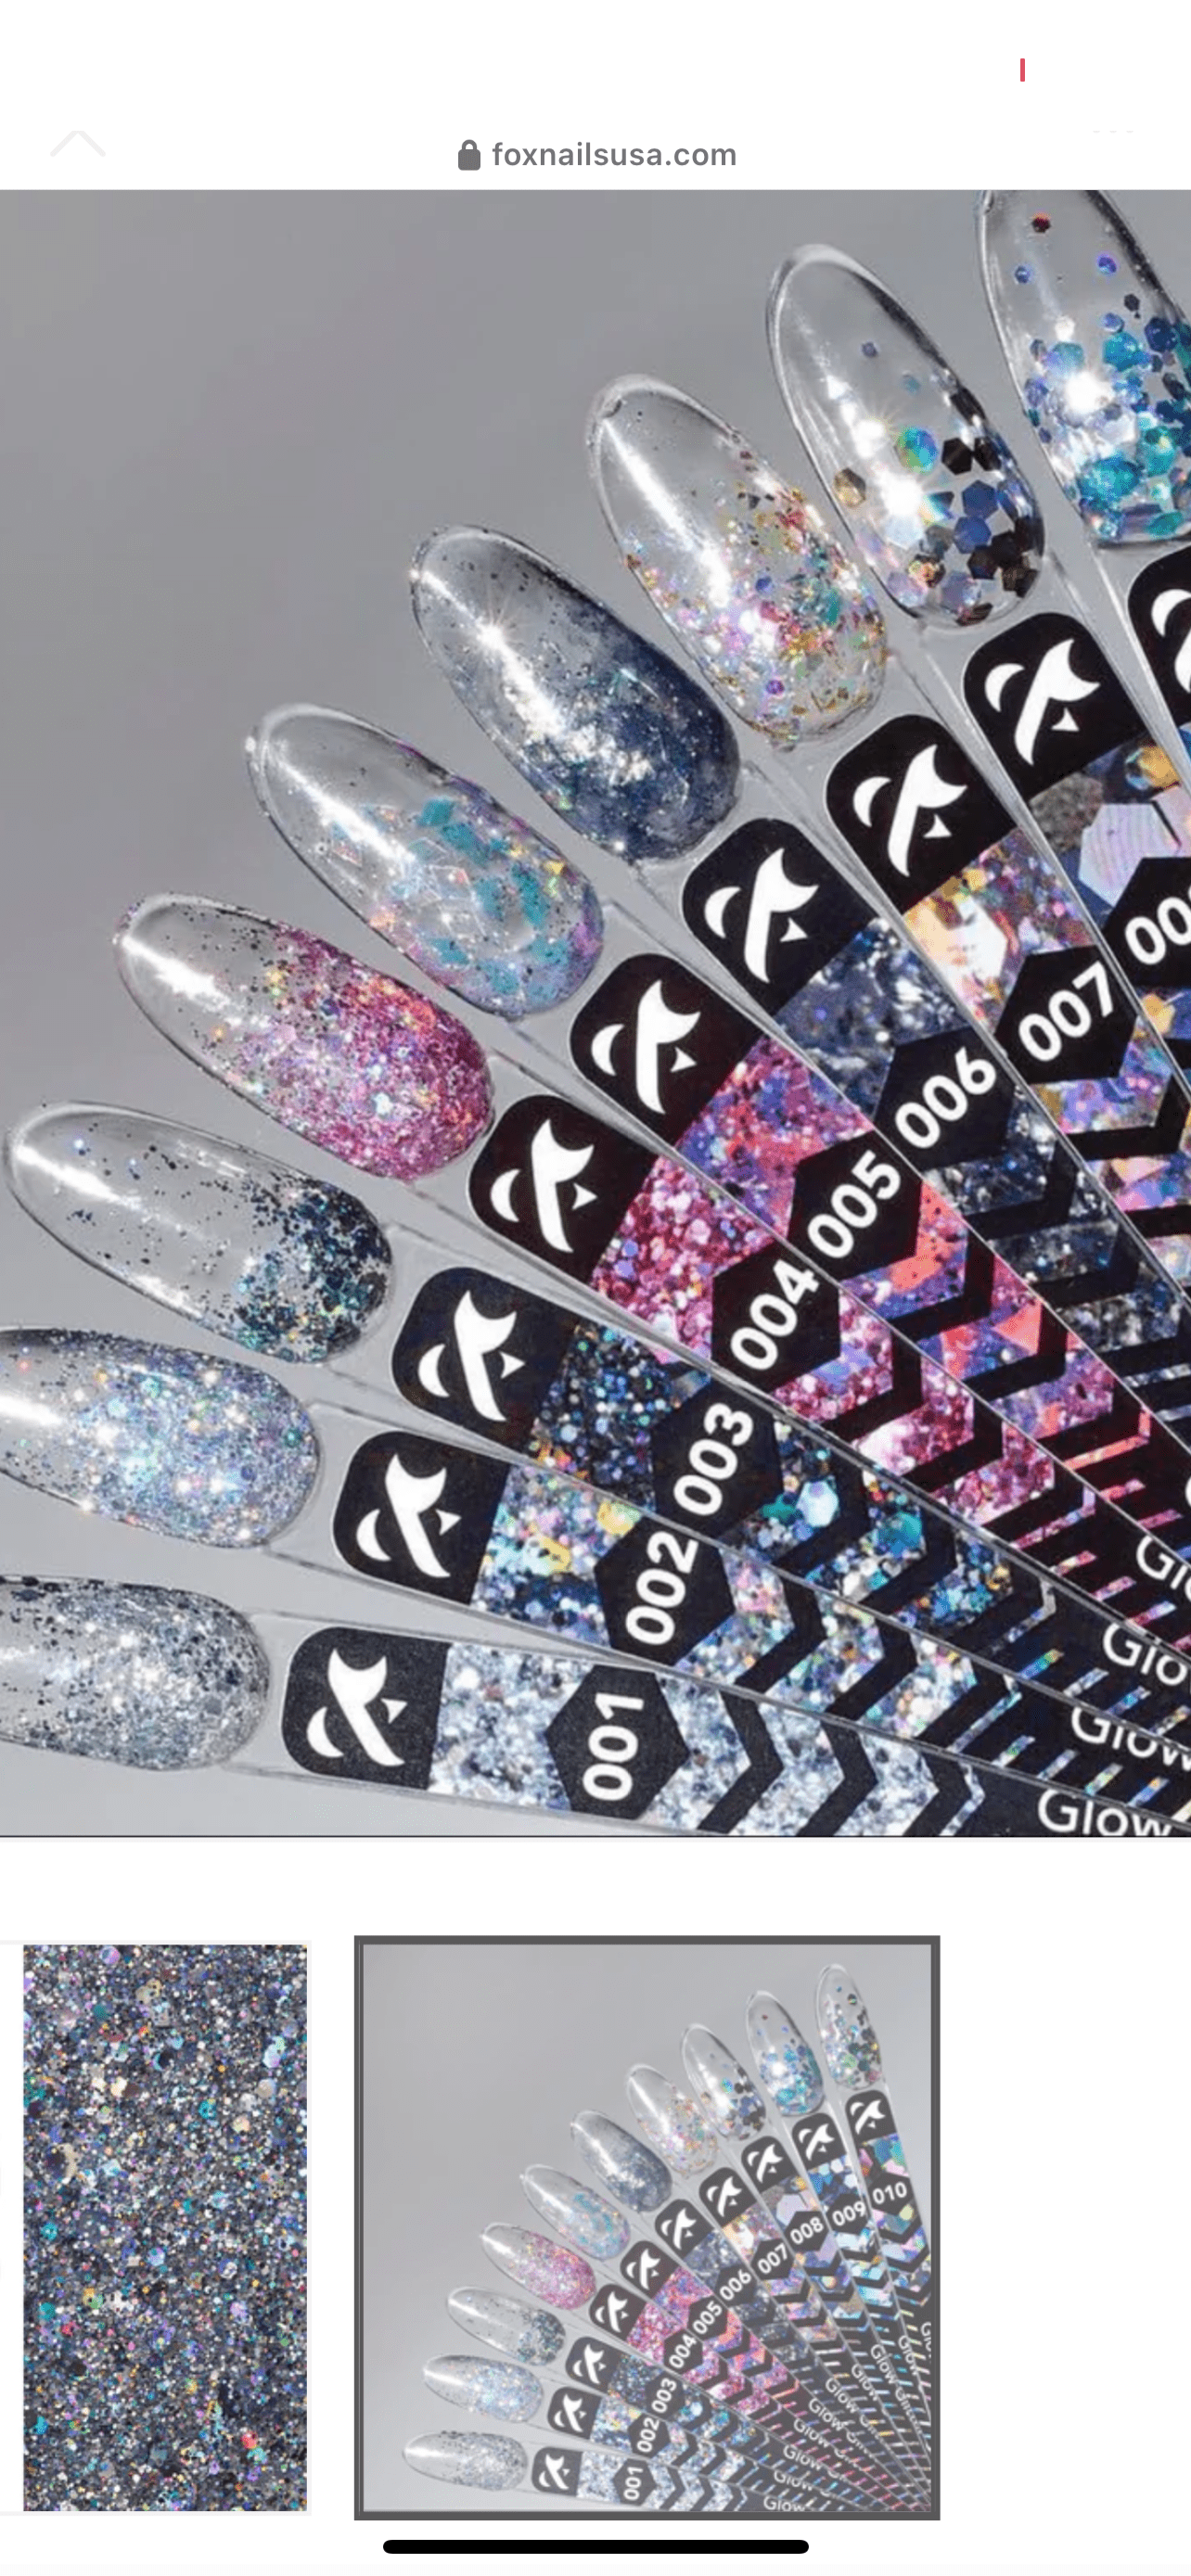 F.O.X Glow Glitter Gel 005 - F.O.X Nails USA